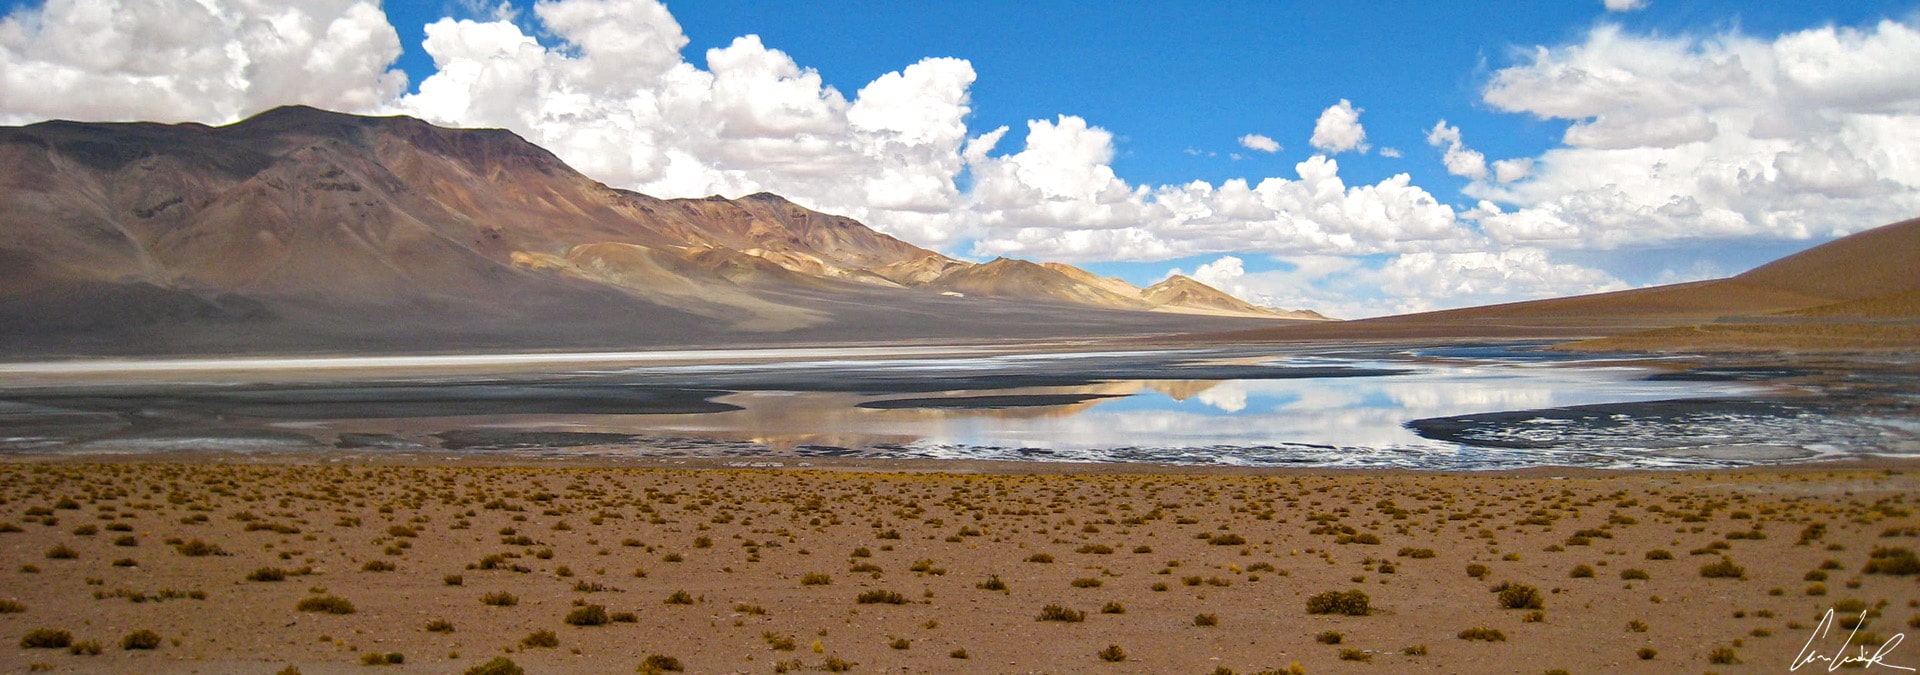 Altiplano chilien - Au sein du Salar de Aguas Calientes se trouvent des coins isolés possédant de l’eau saline et de la végétation sauvage